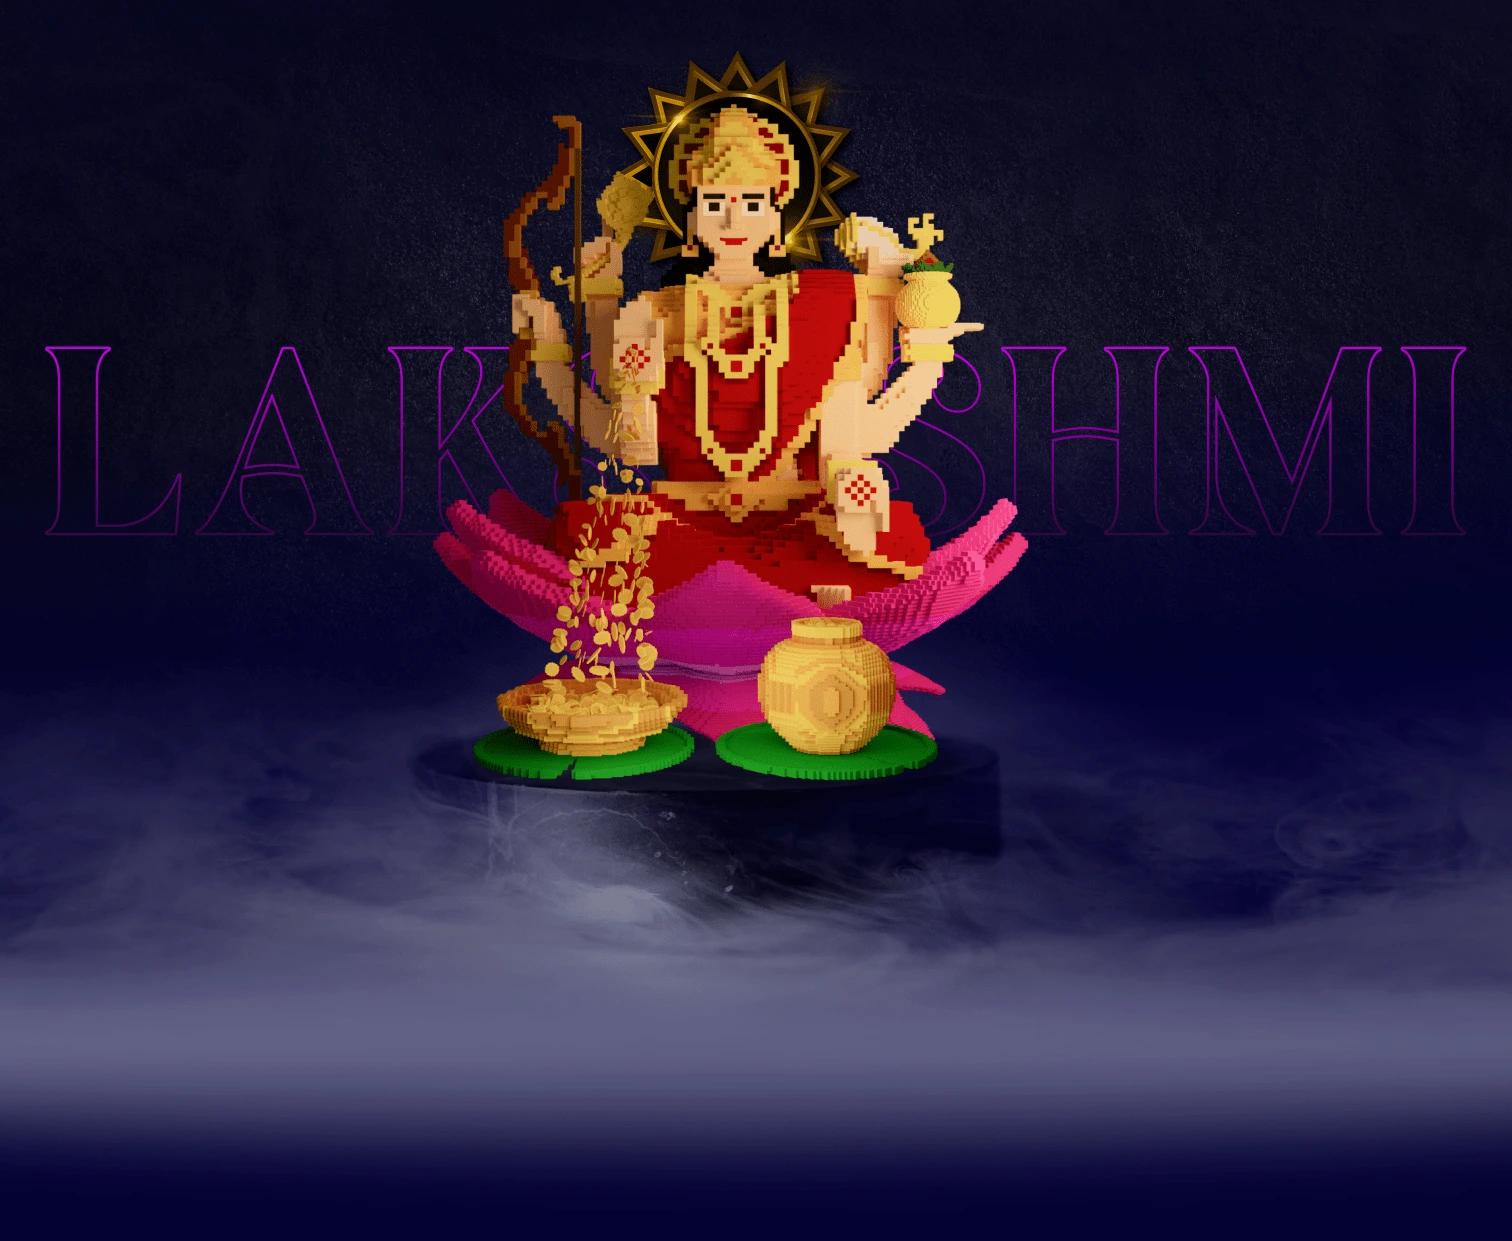 lakshmi hero